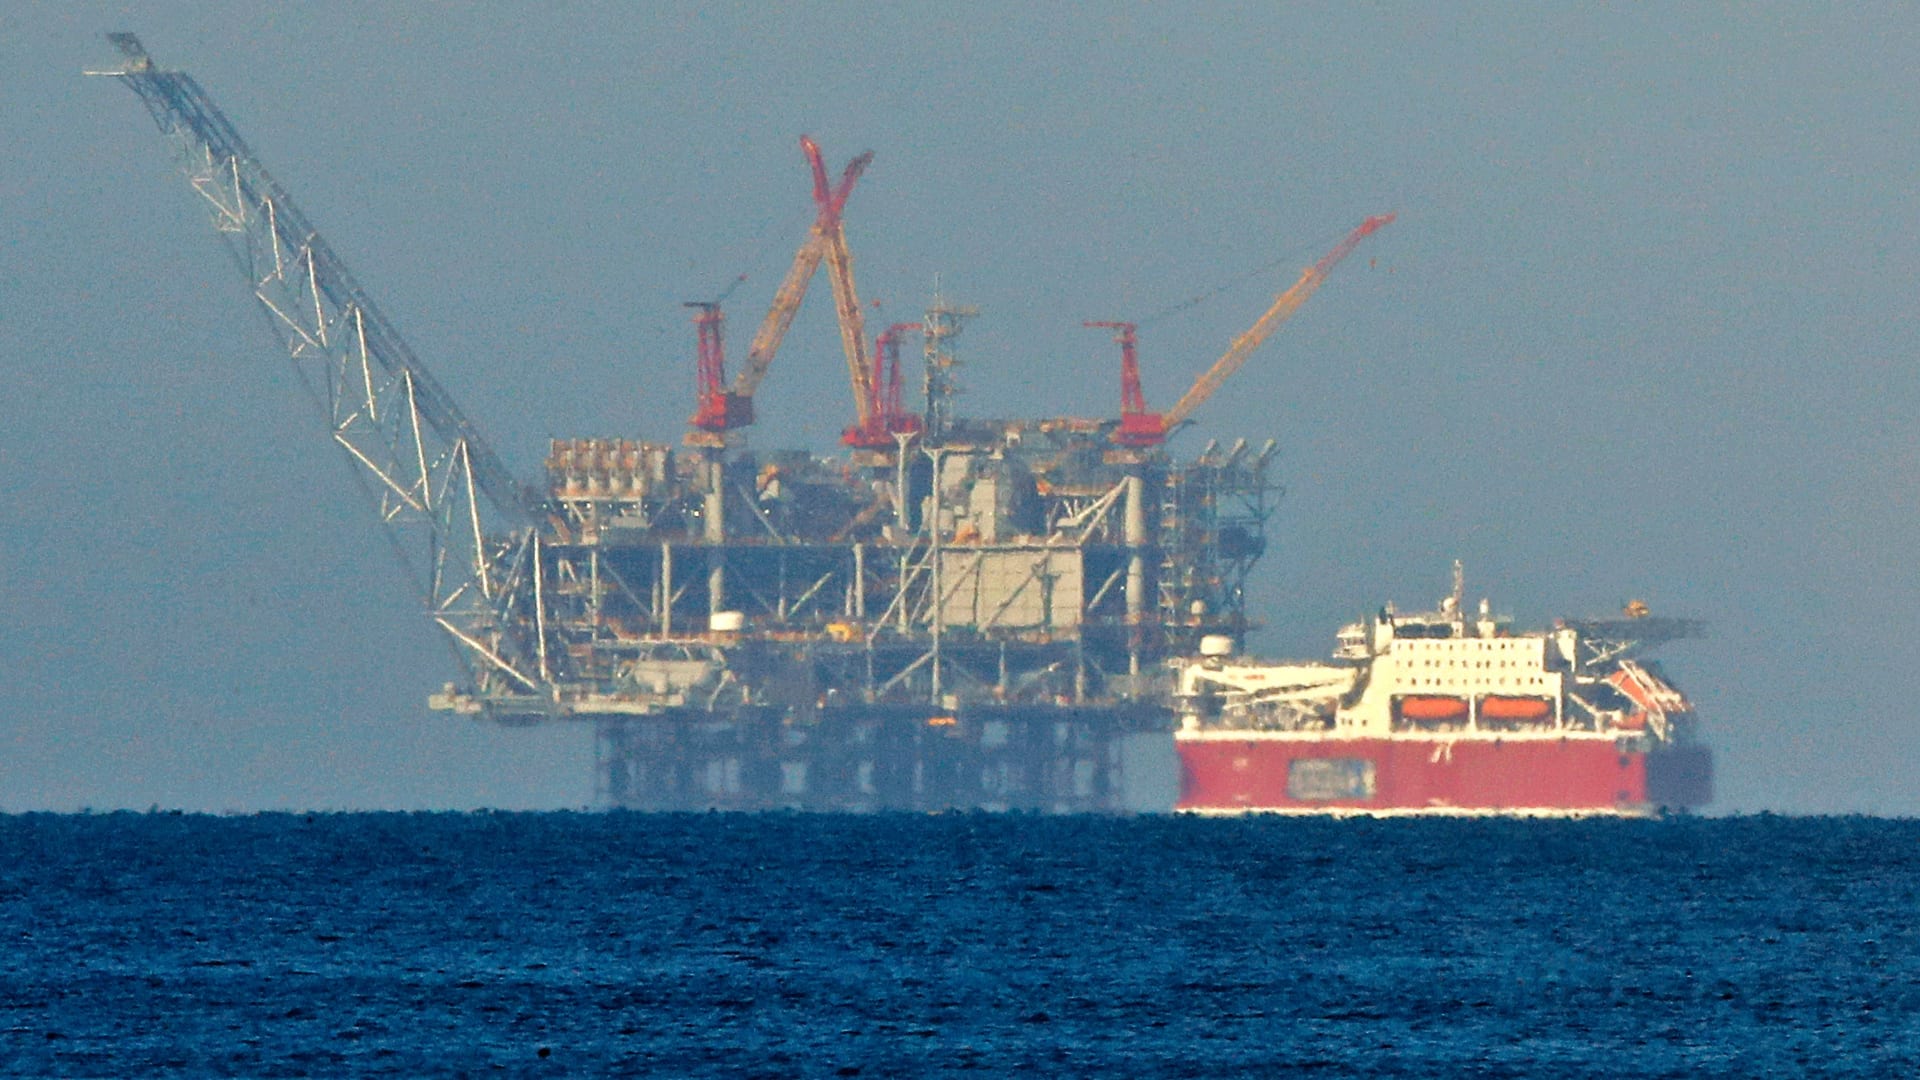  مصر توقع اتفاقية مع إيني الإيطالية لزيادة صادرات الغاز إلى أوروبا